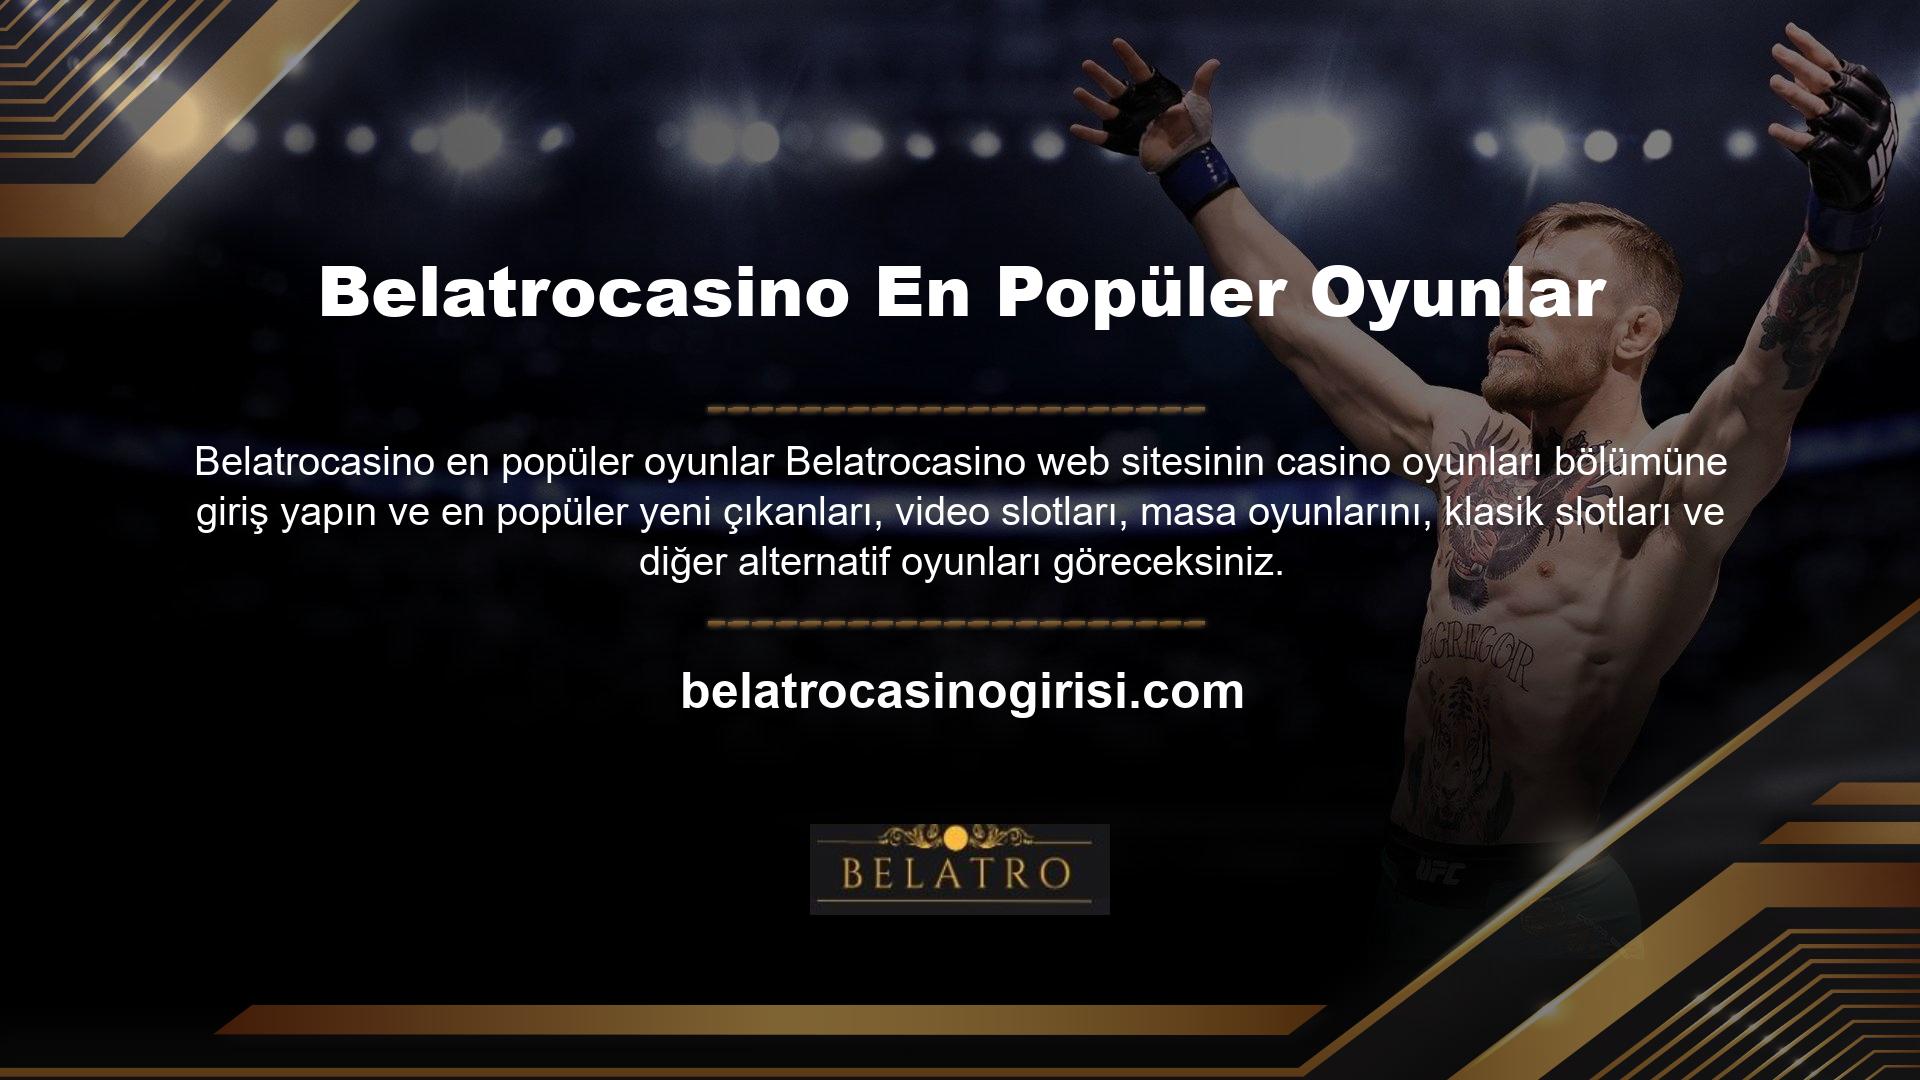 Belatrocasino Ödeme Sistemleri Uzun yıllardır casino sektöründe yer alan ve sunduğu oyunlarla çok sayıda üye kazanmış bir site olan Belatrocasino, değişime açık bir sitedir